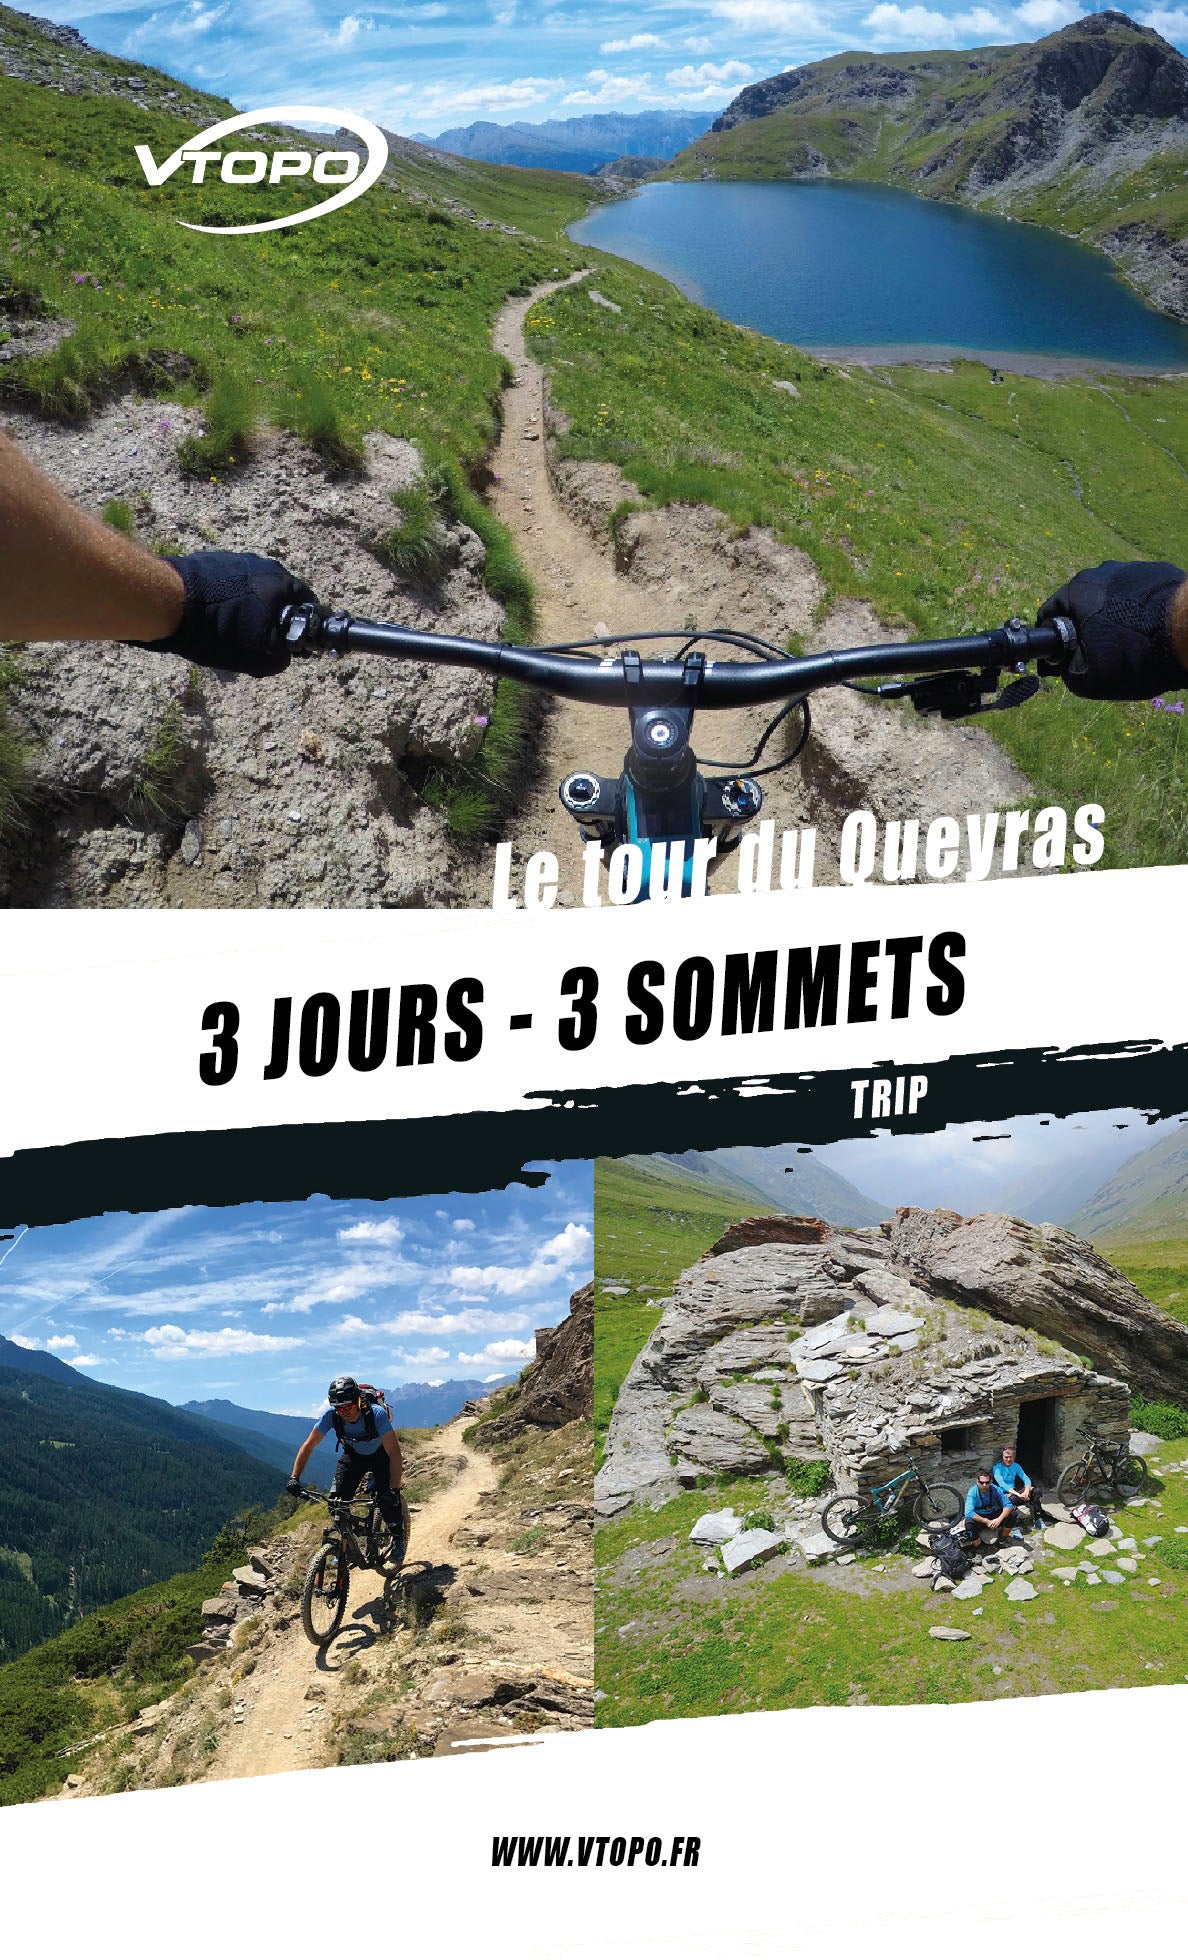 VTOPO VTT Trip Tour du Queyras - Livre numérique